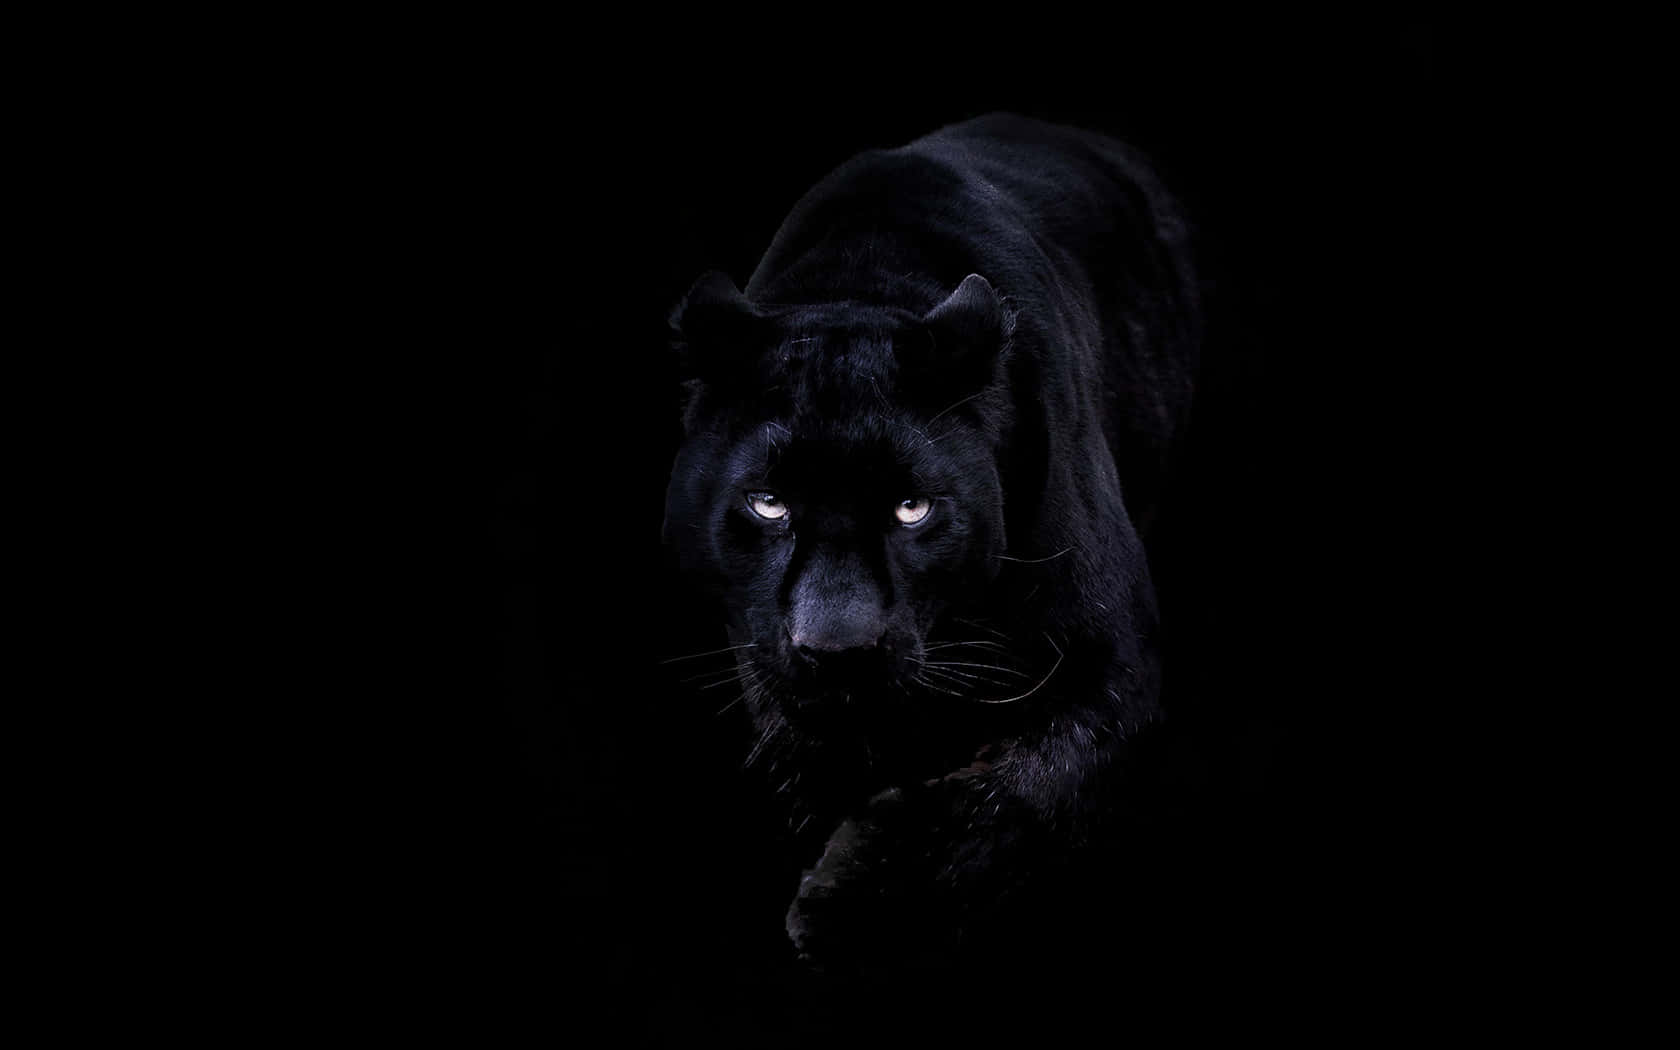 Unapantera Negra Está Caminando En La Oscuridad. Fondo de pantalla